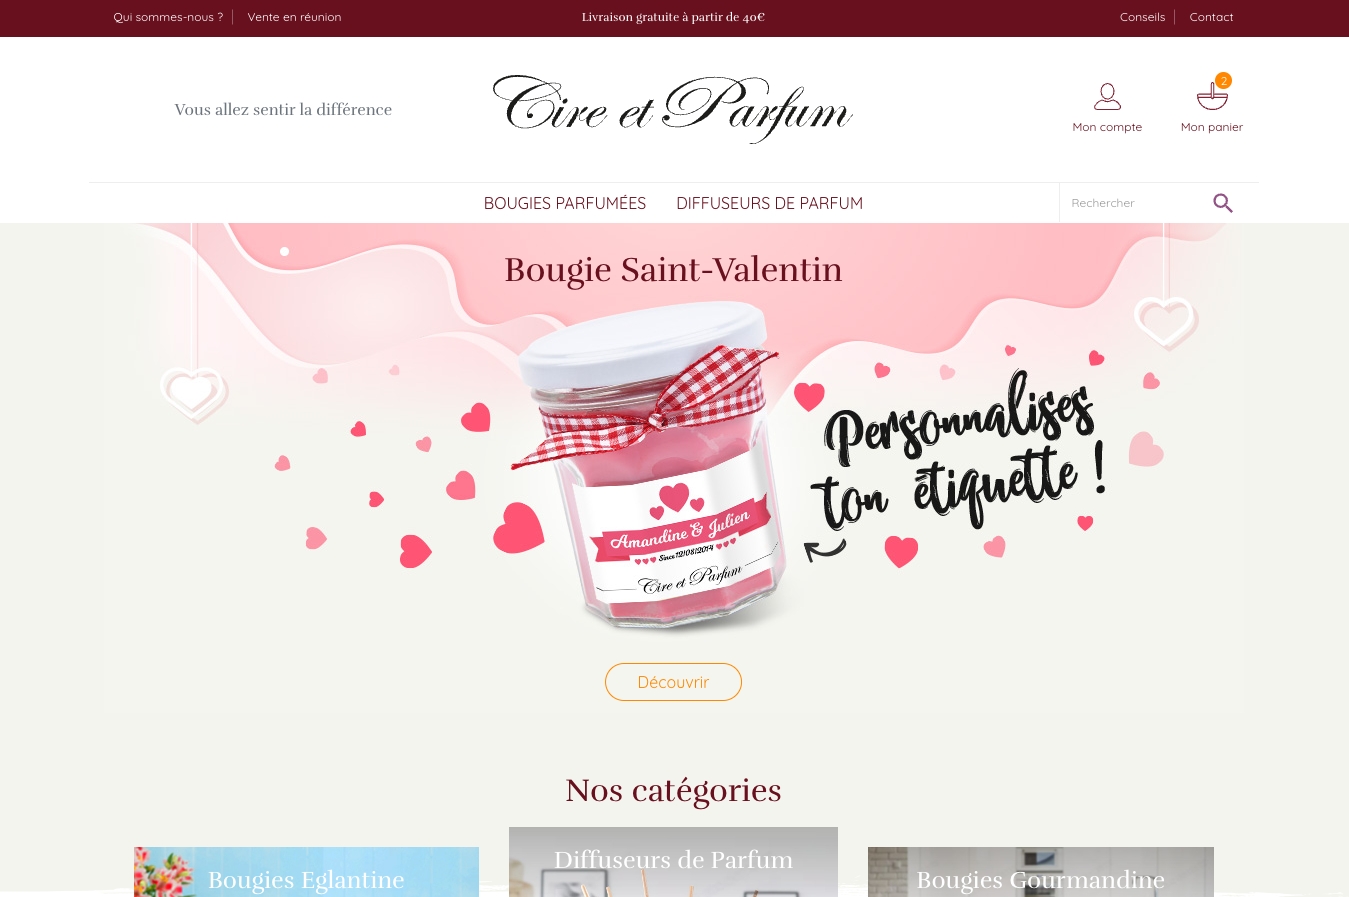 Capture d'écran du site Cire et parfum